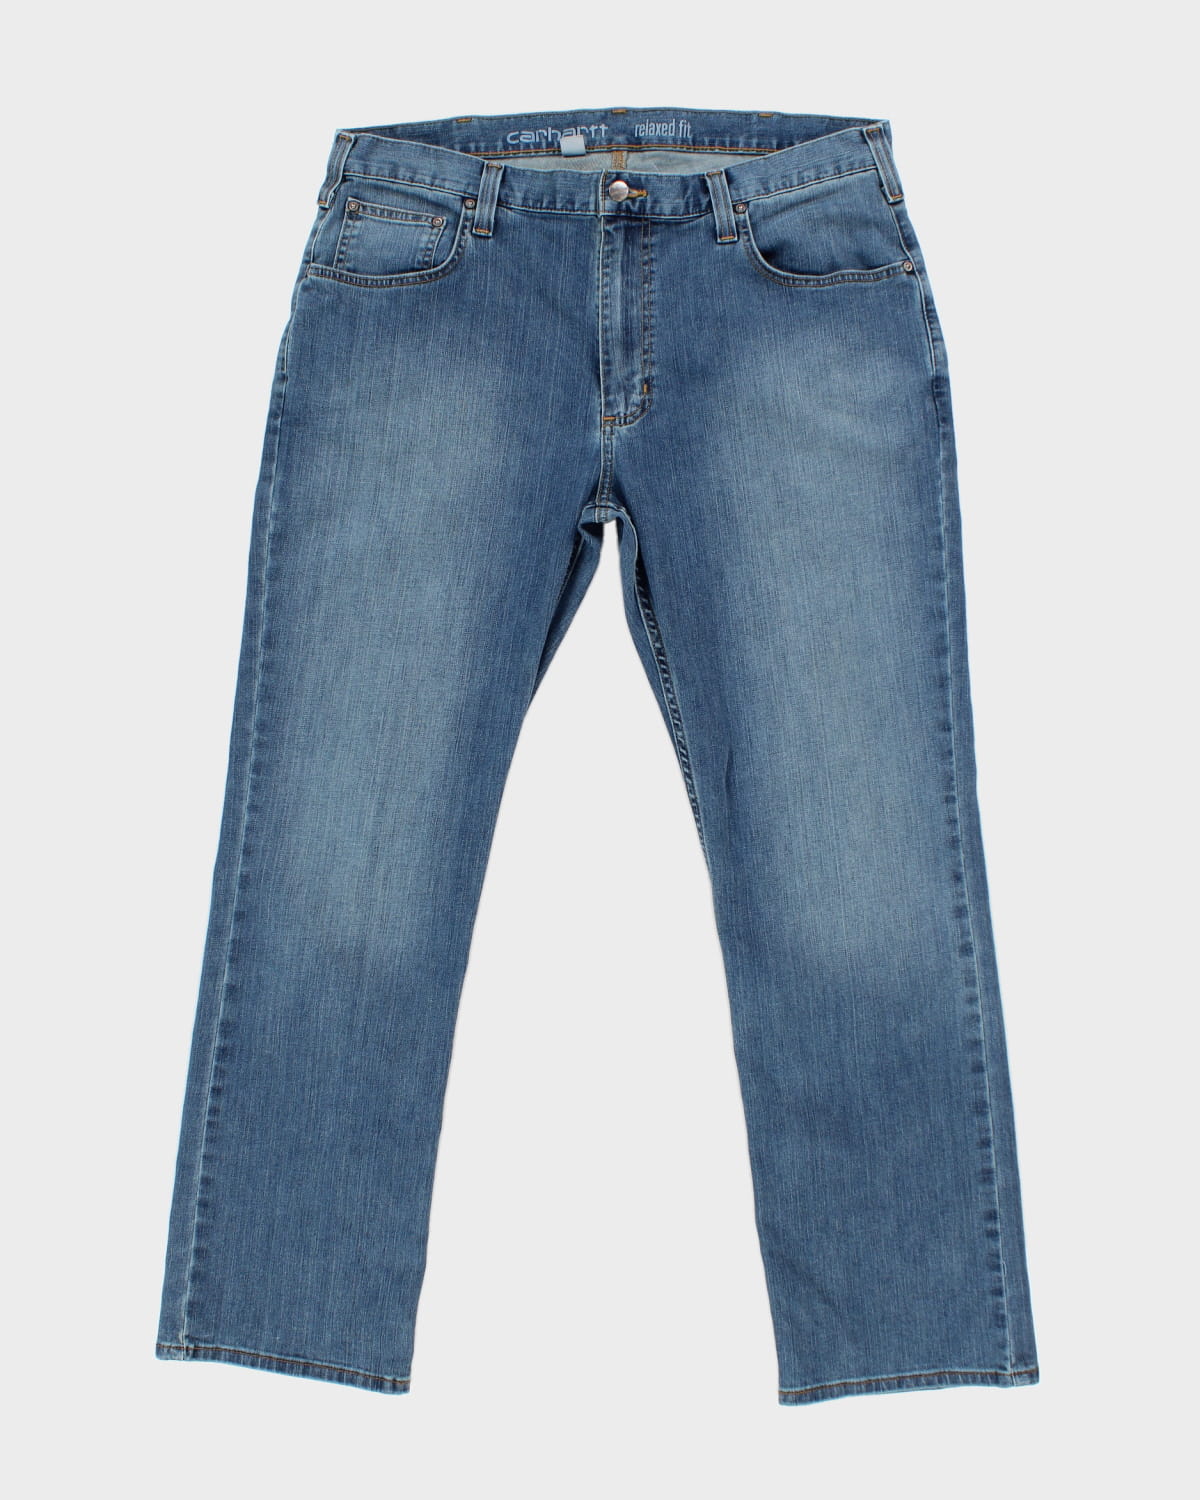 Dads Carhartt Jeans W38 L30